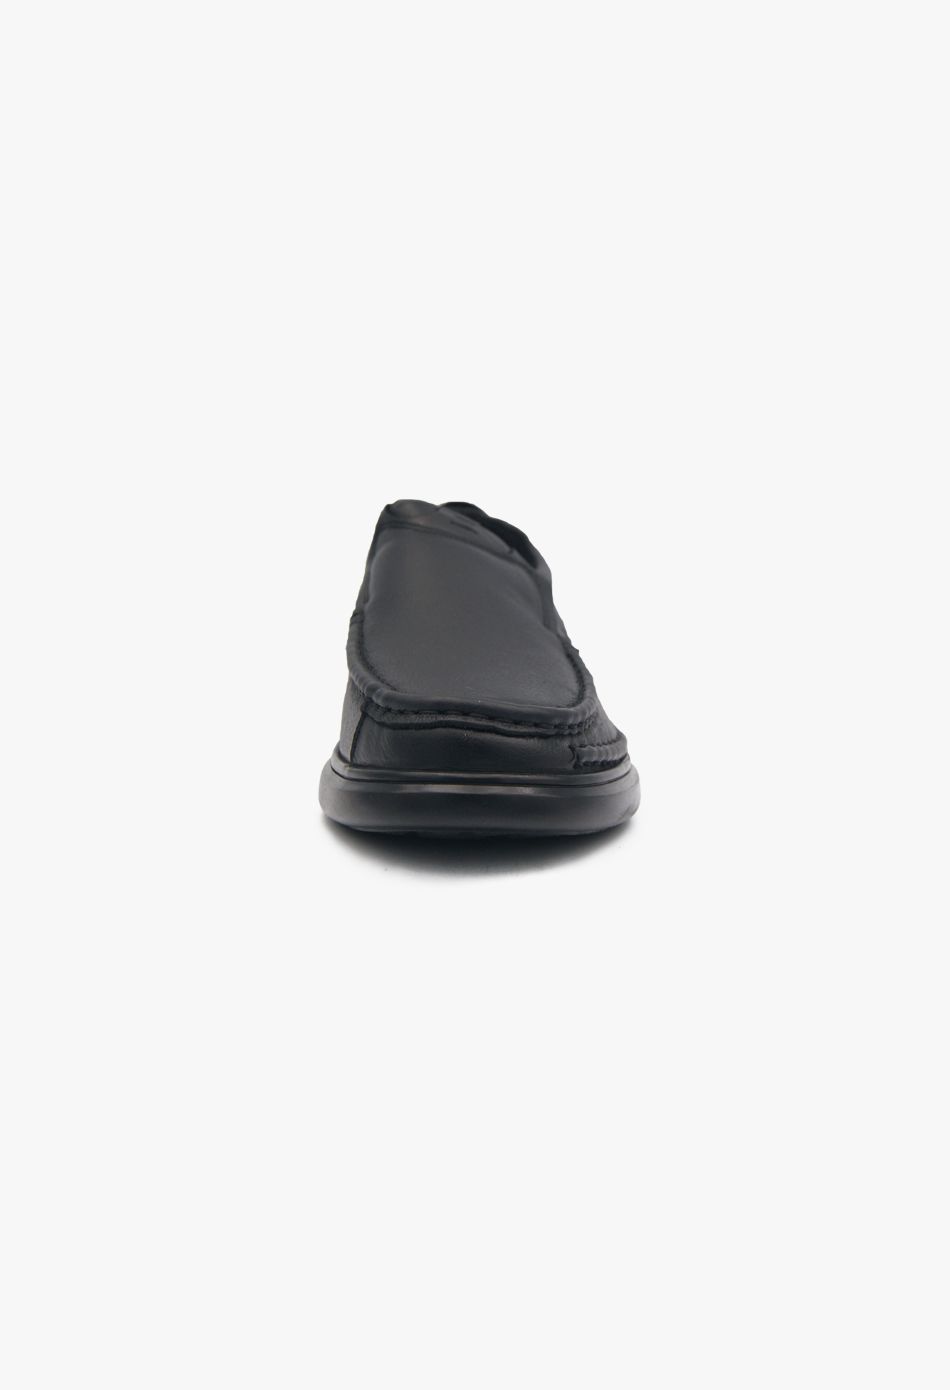 Δερμάτινα Ανδρικά Loafers σε Μαύρο / 810-2-black ΑΝΔΡΙΚΑ ΠΑΠΟΥΤΣΙΑ joya.gr